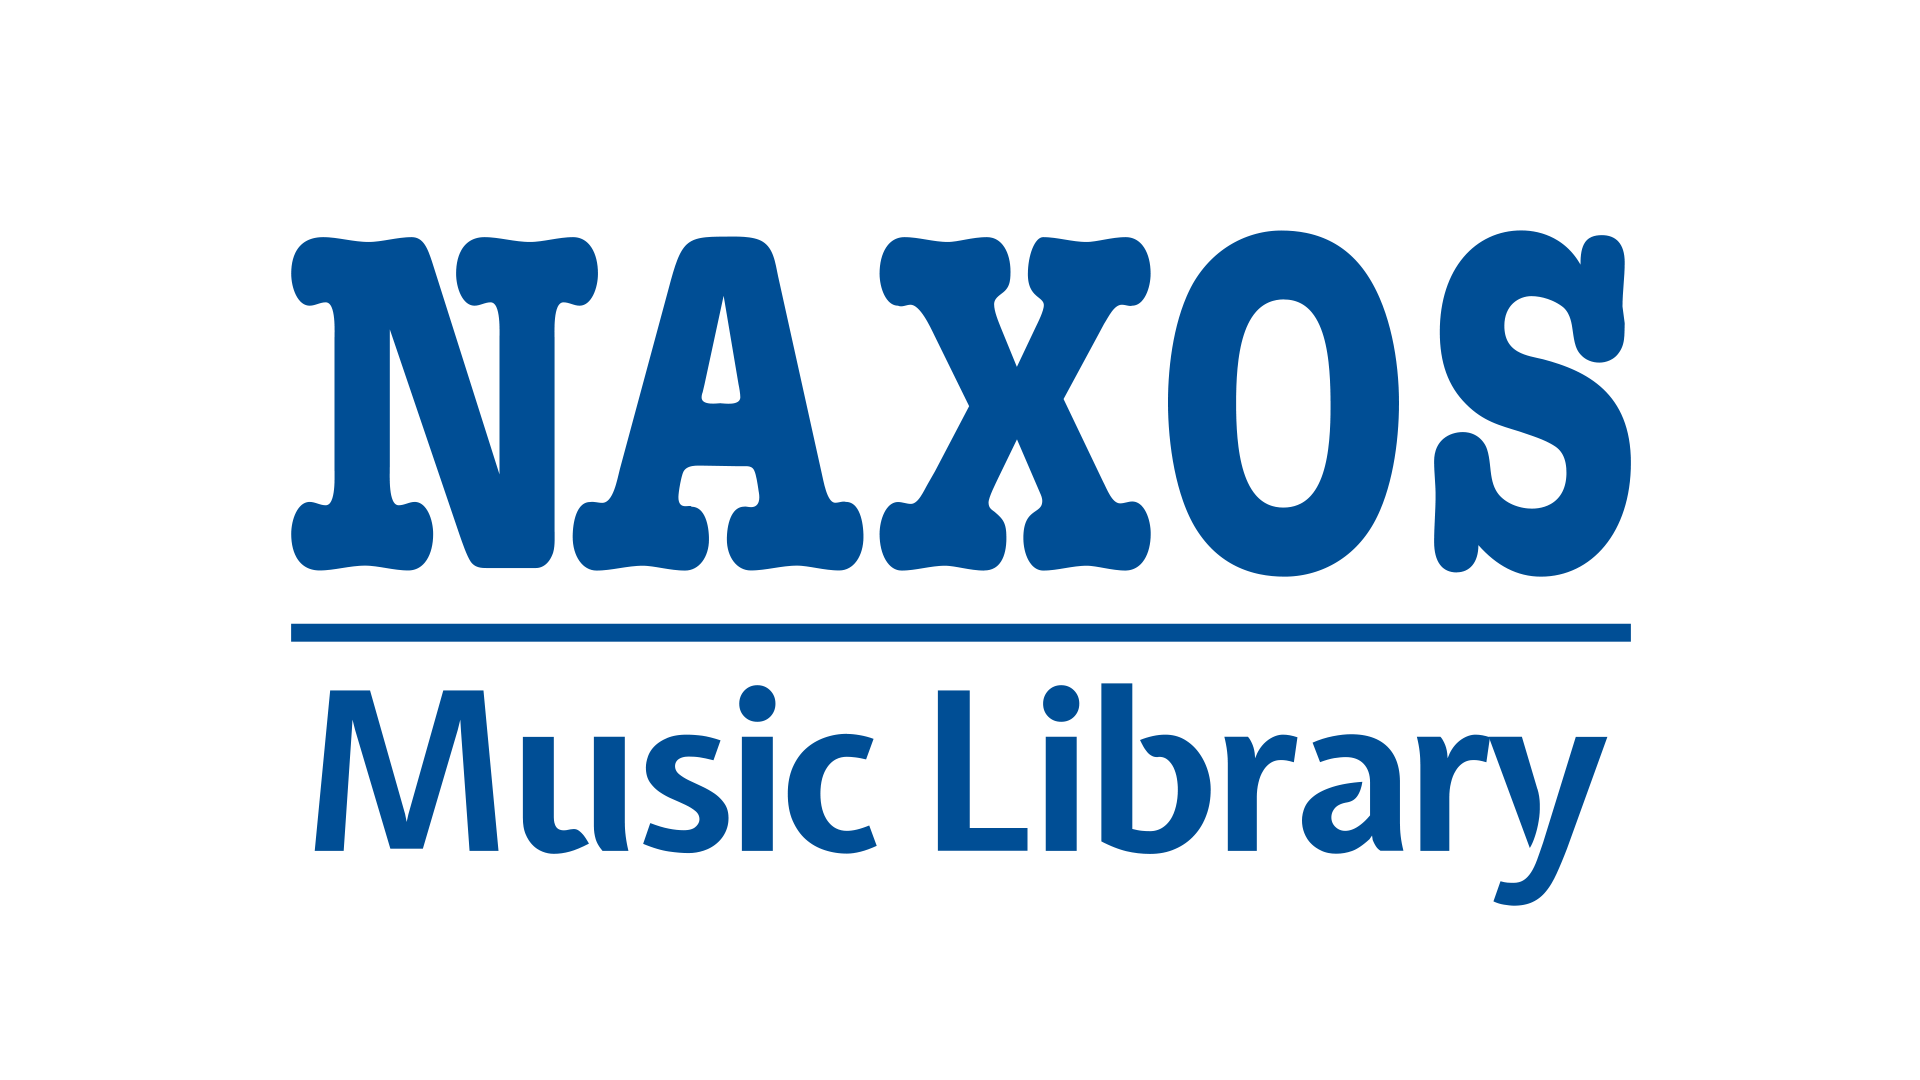 شعار مكتبة الموسيقى ناكسوس